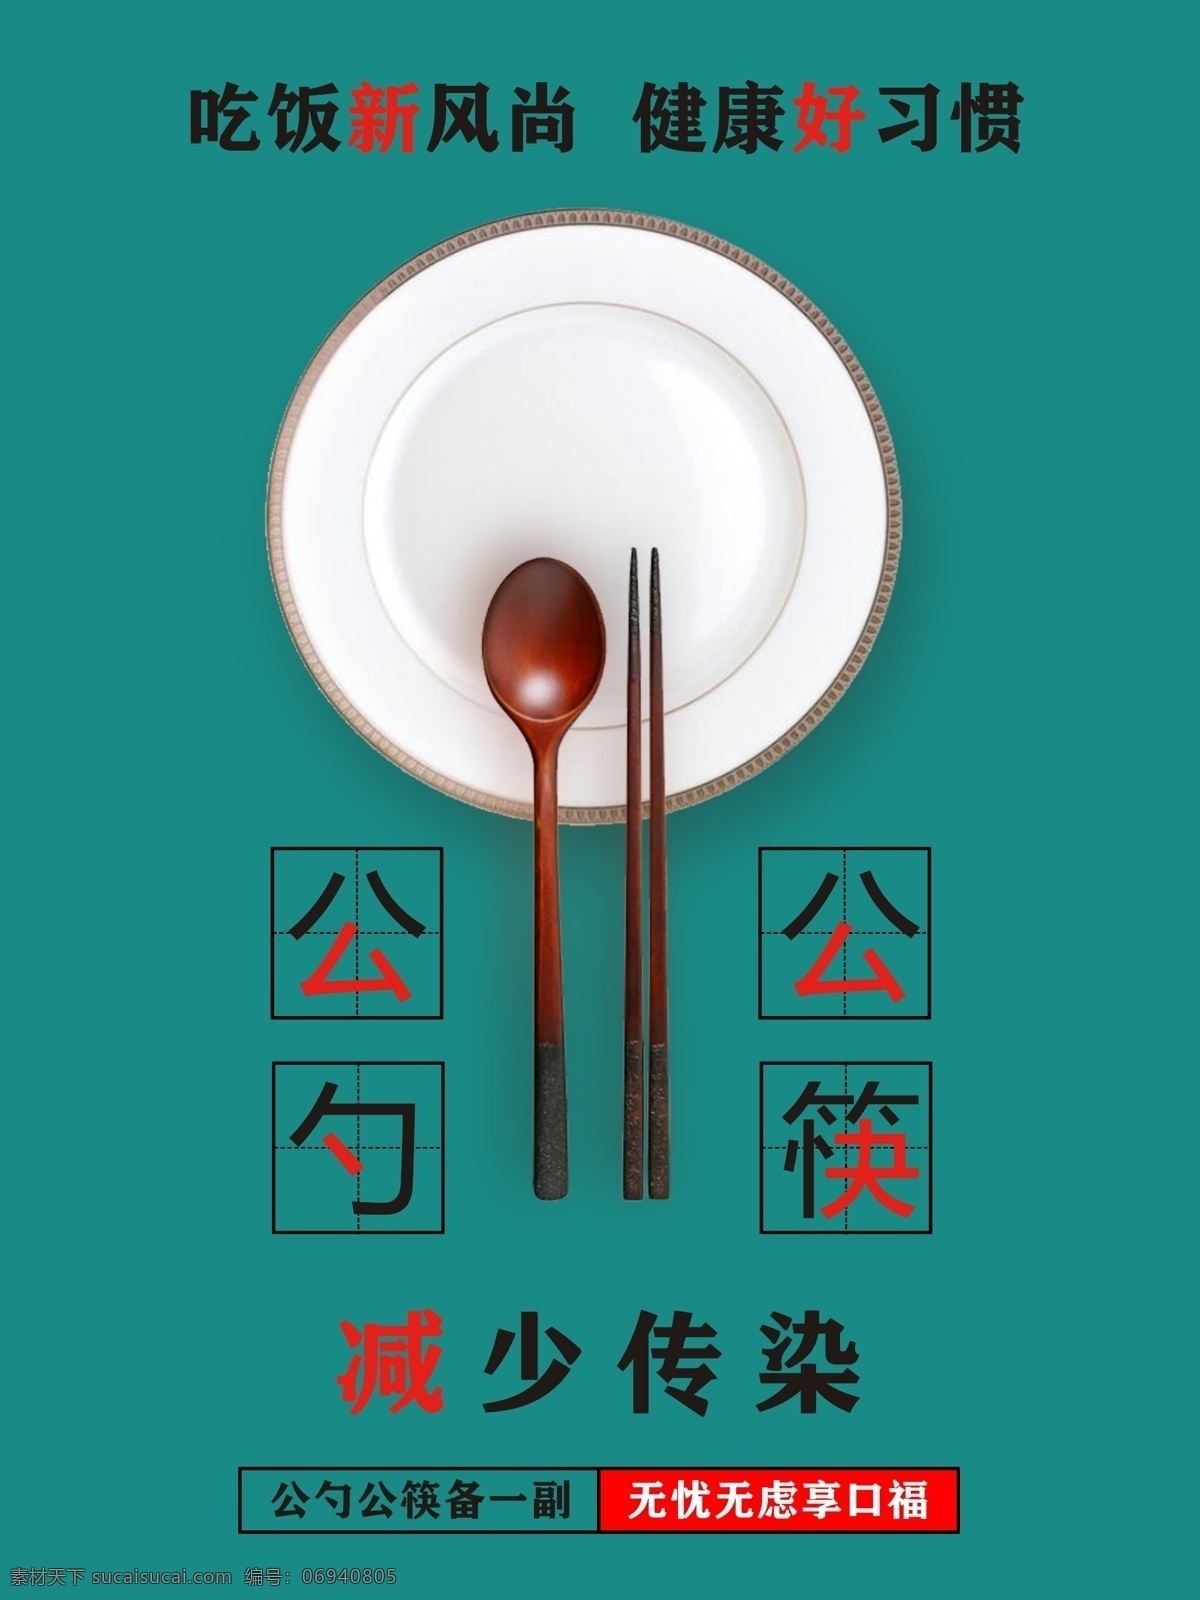 公勺公筷图片 公勺 公筷 减少传染 健康饮食 创卫活动